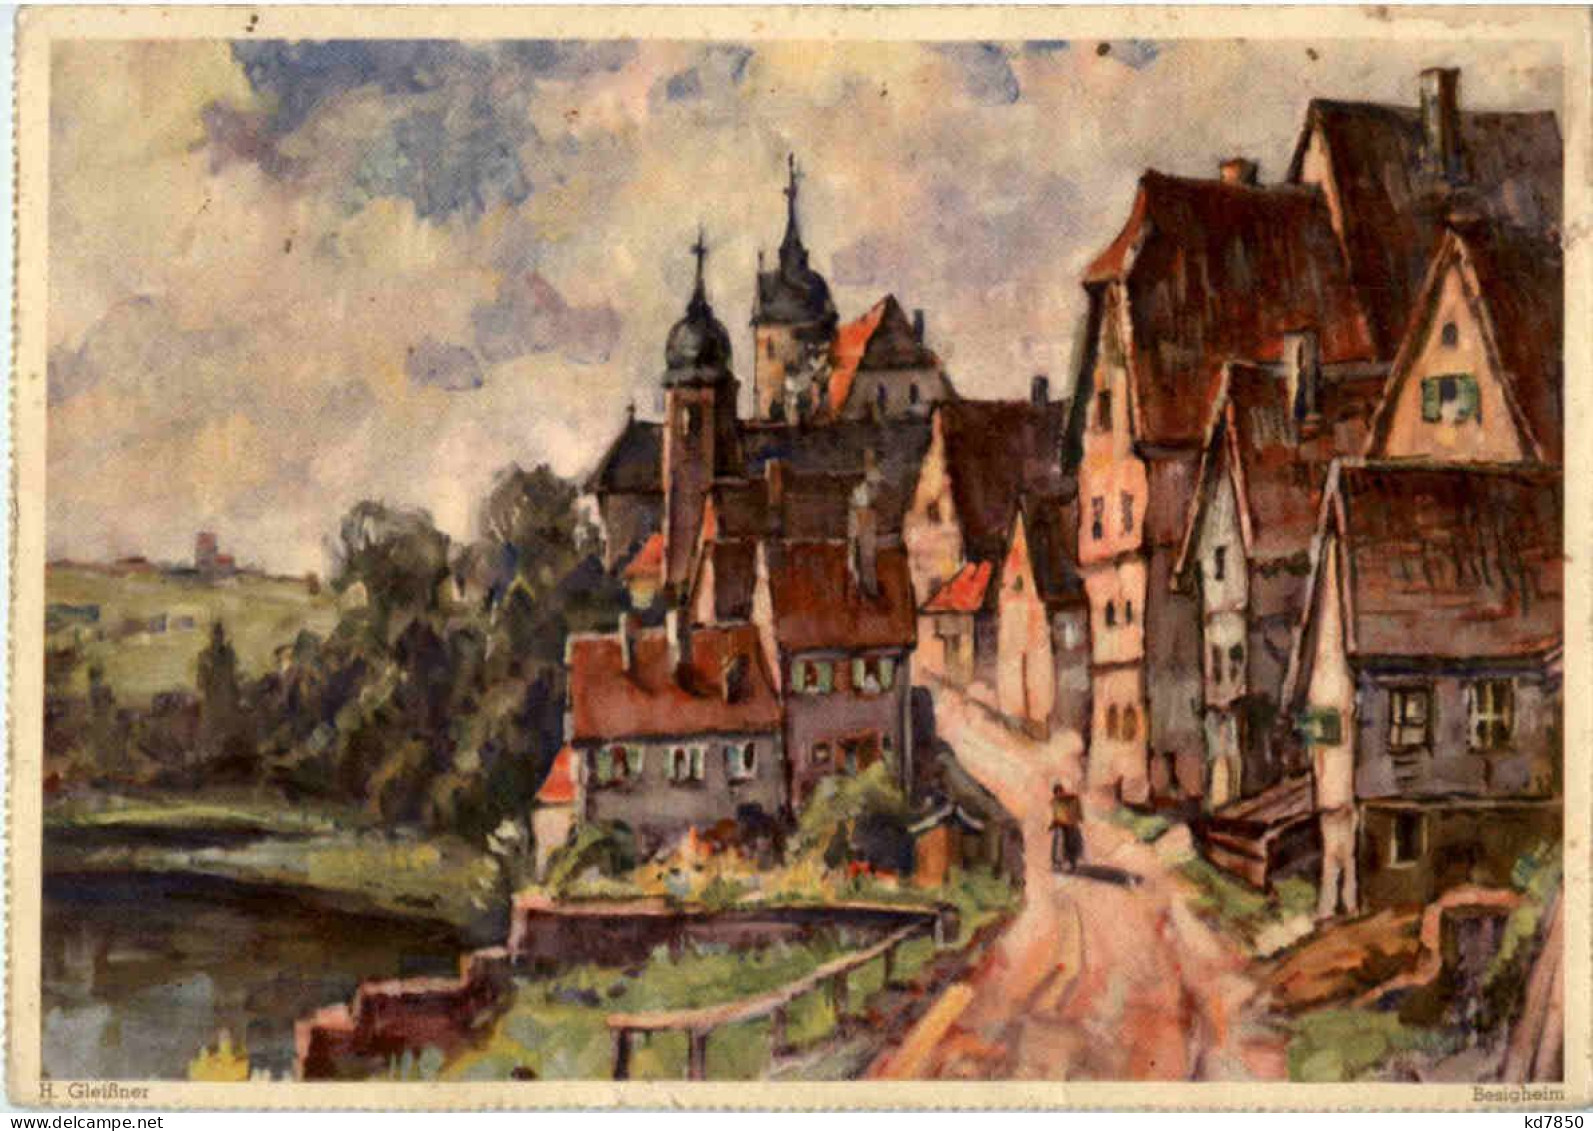 Besigheim - Künstlerkarte H. Gleisssner - Ludwigsburg